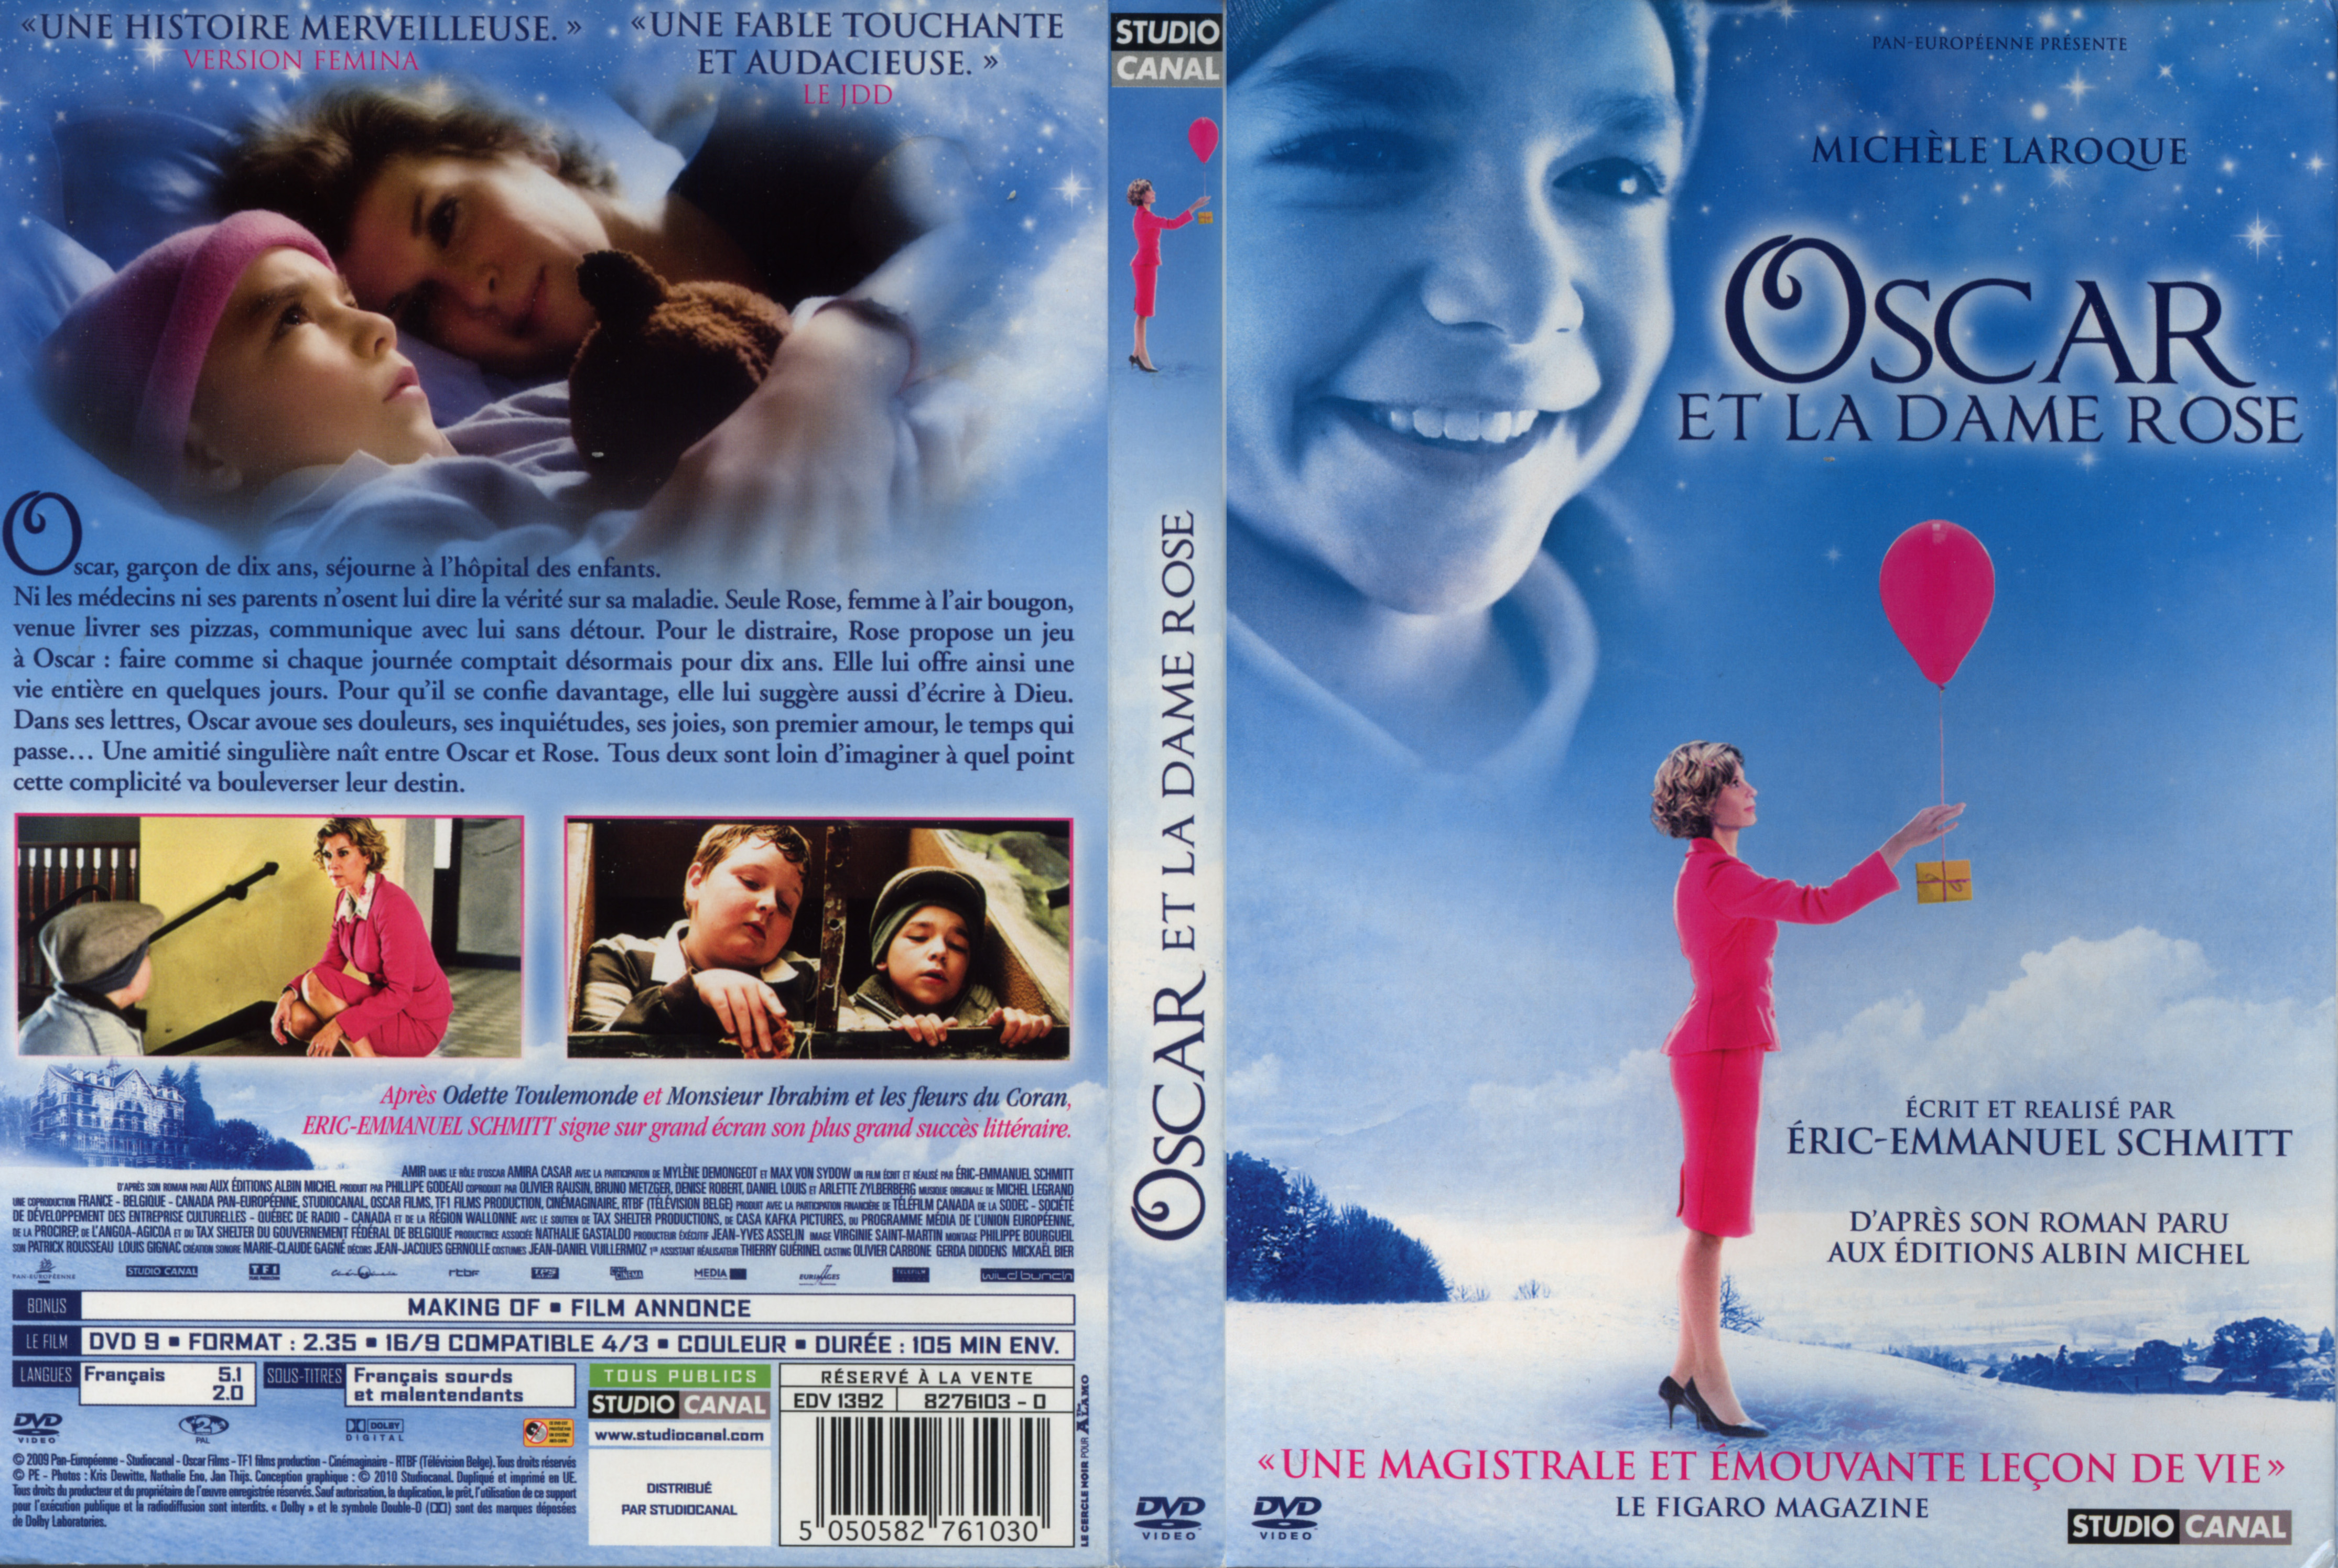 Jaquette DVD Oscar et la dame rose v2